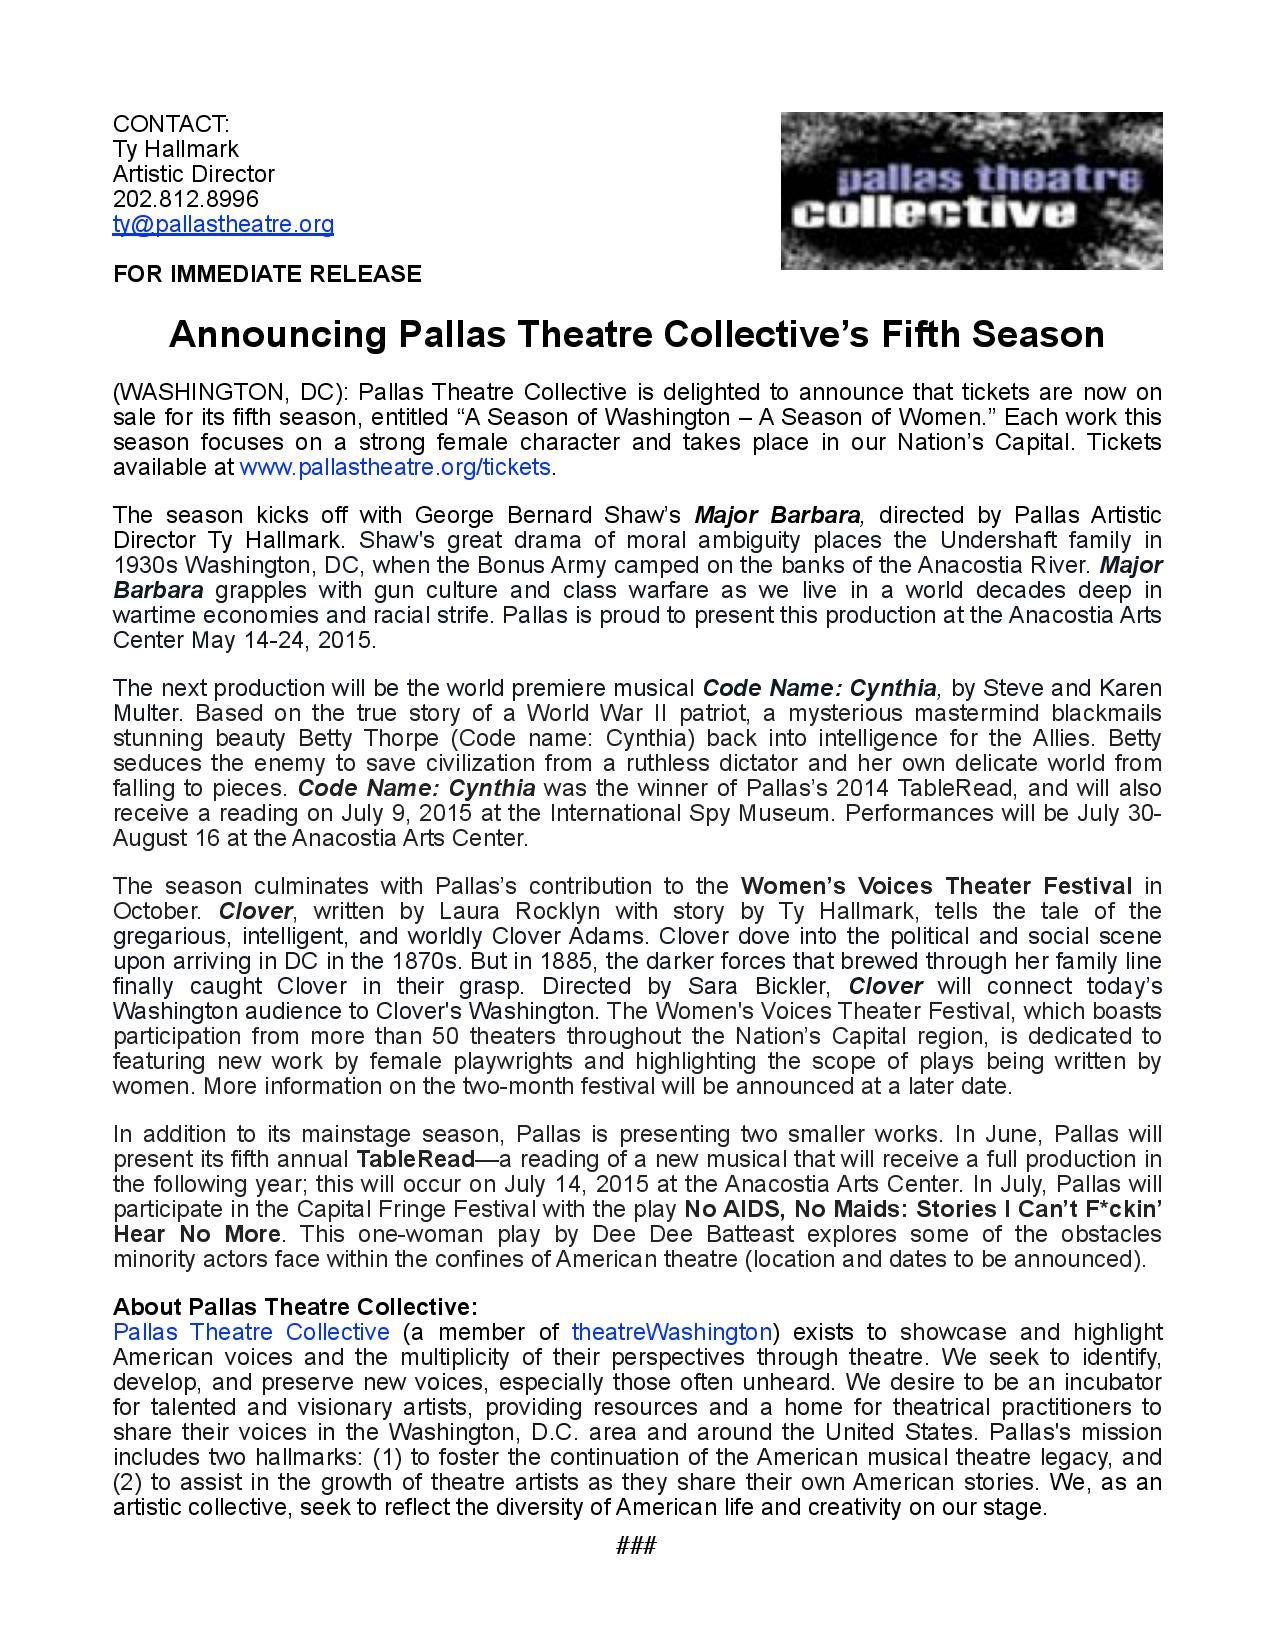 Pallas Theatre_2015 season_press release-page-001